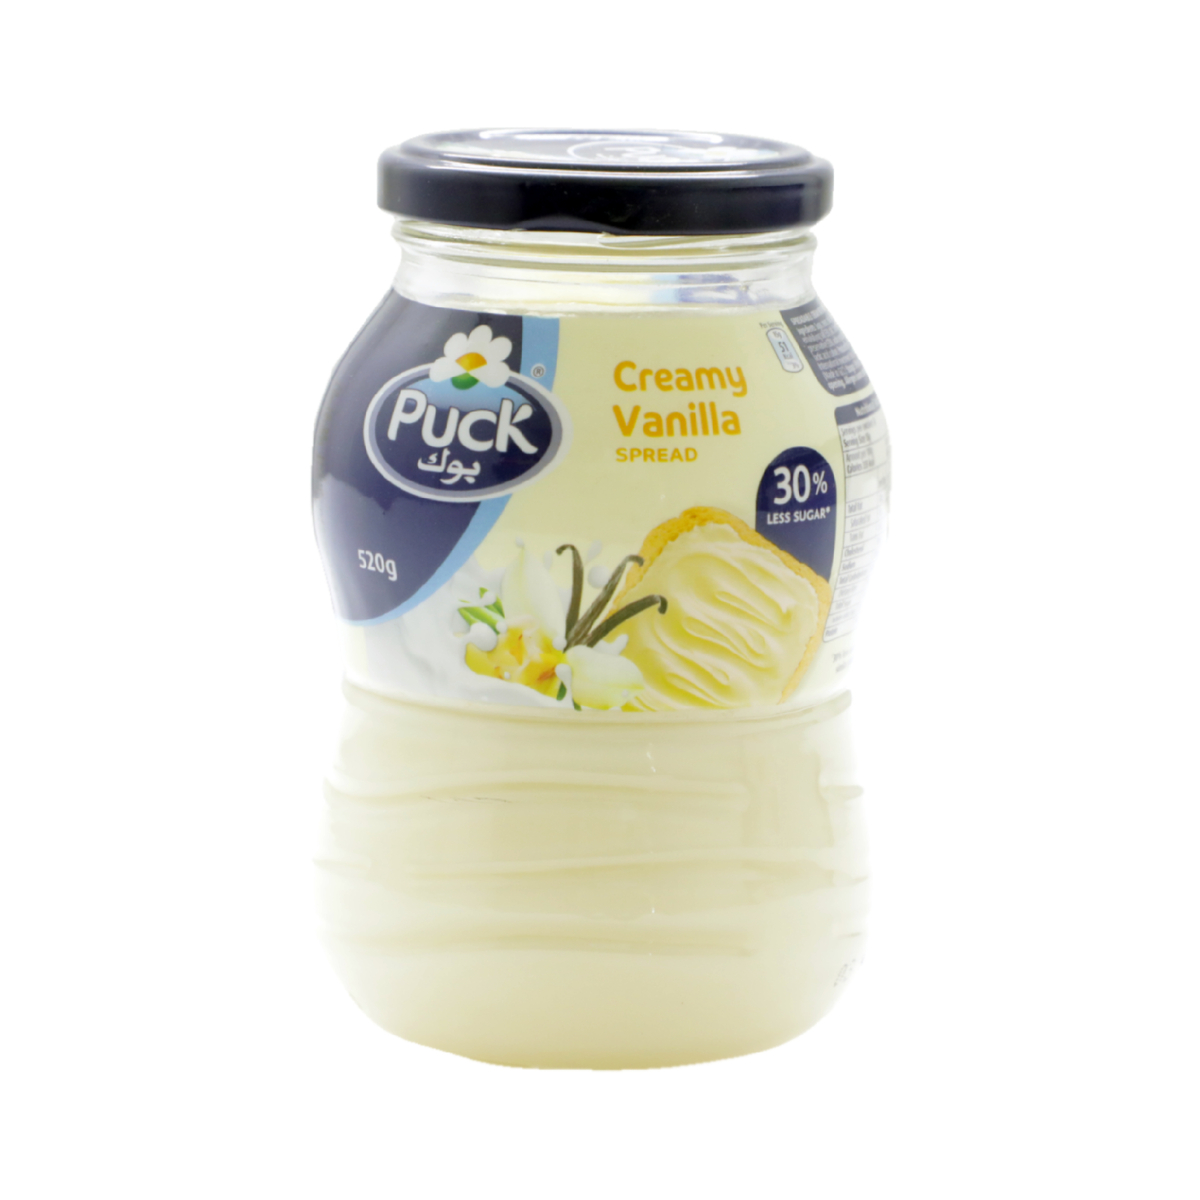 Puck Creamy Vanilla Spread 520 g